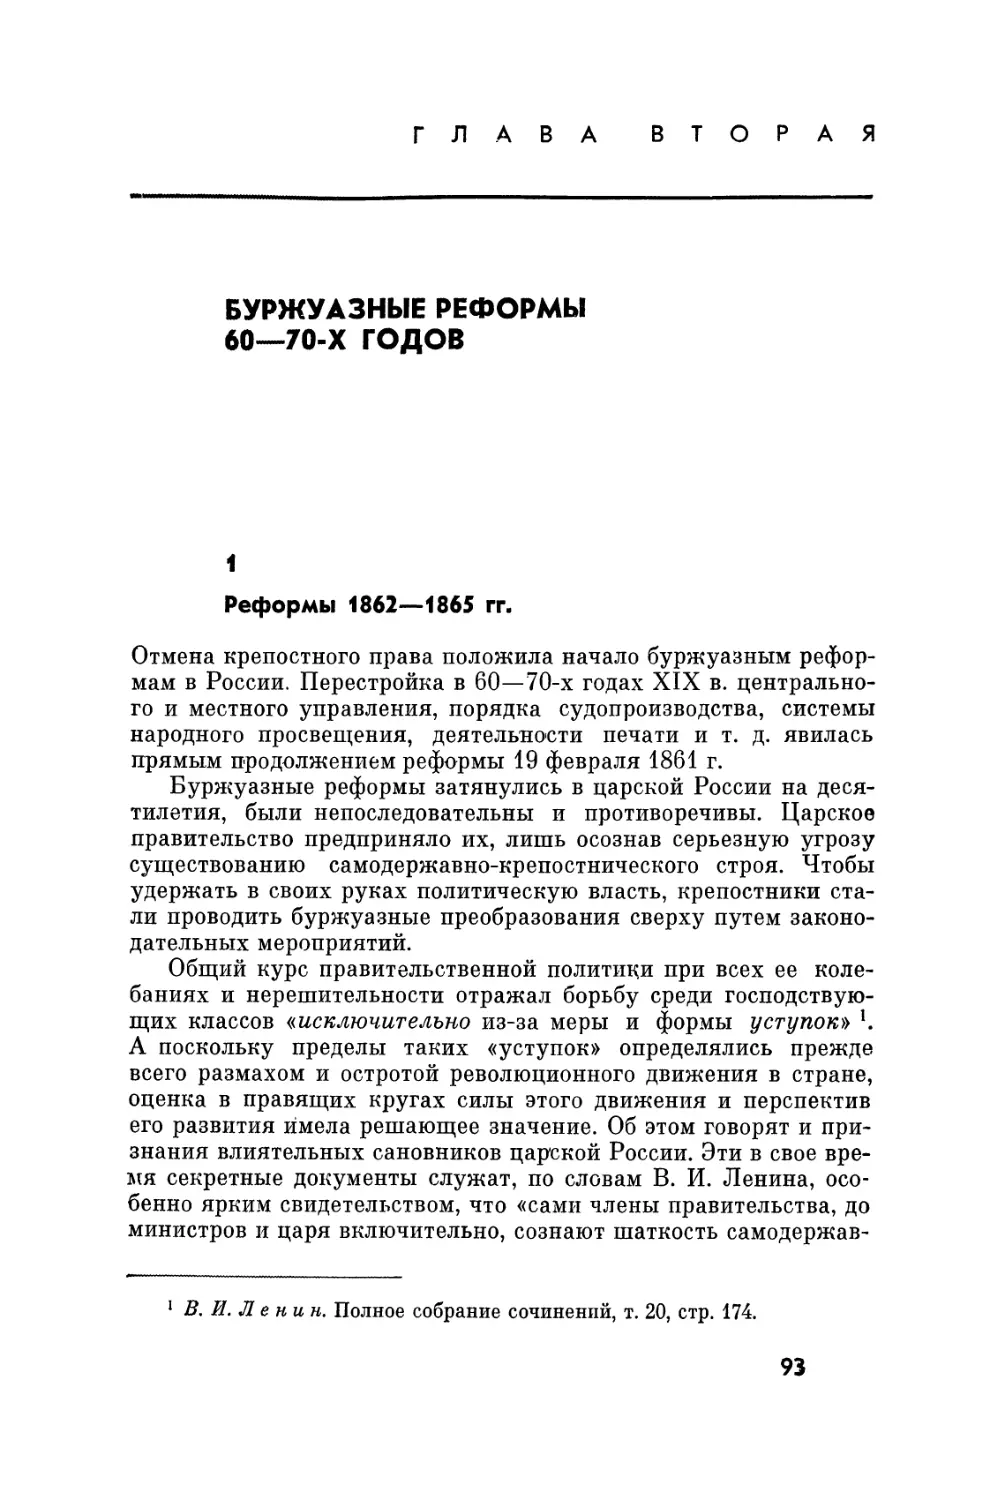 Глава вторая. Буржуазные реформы 60-70-х годов XIX в.